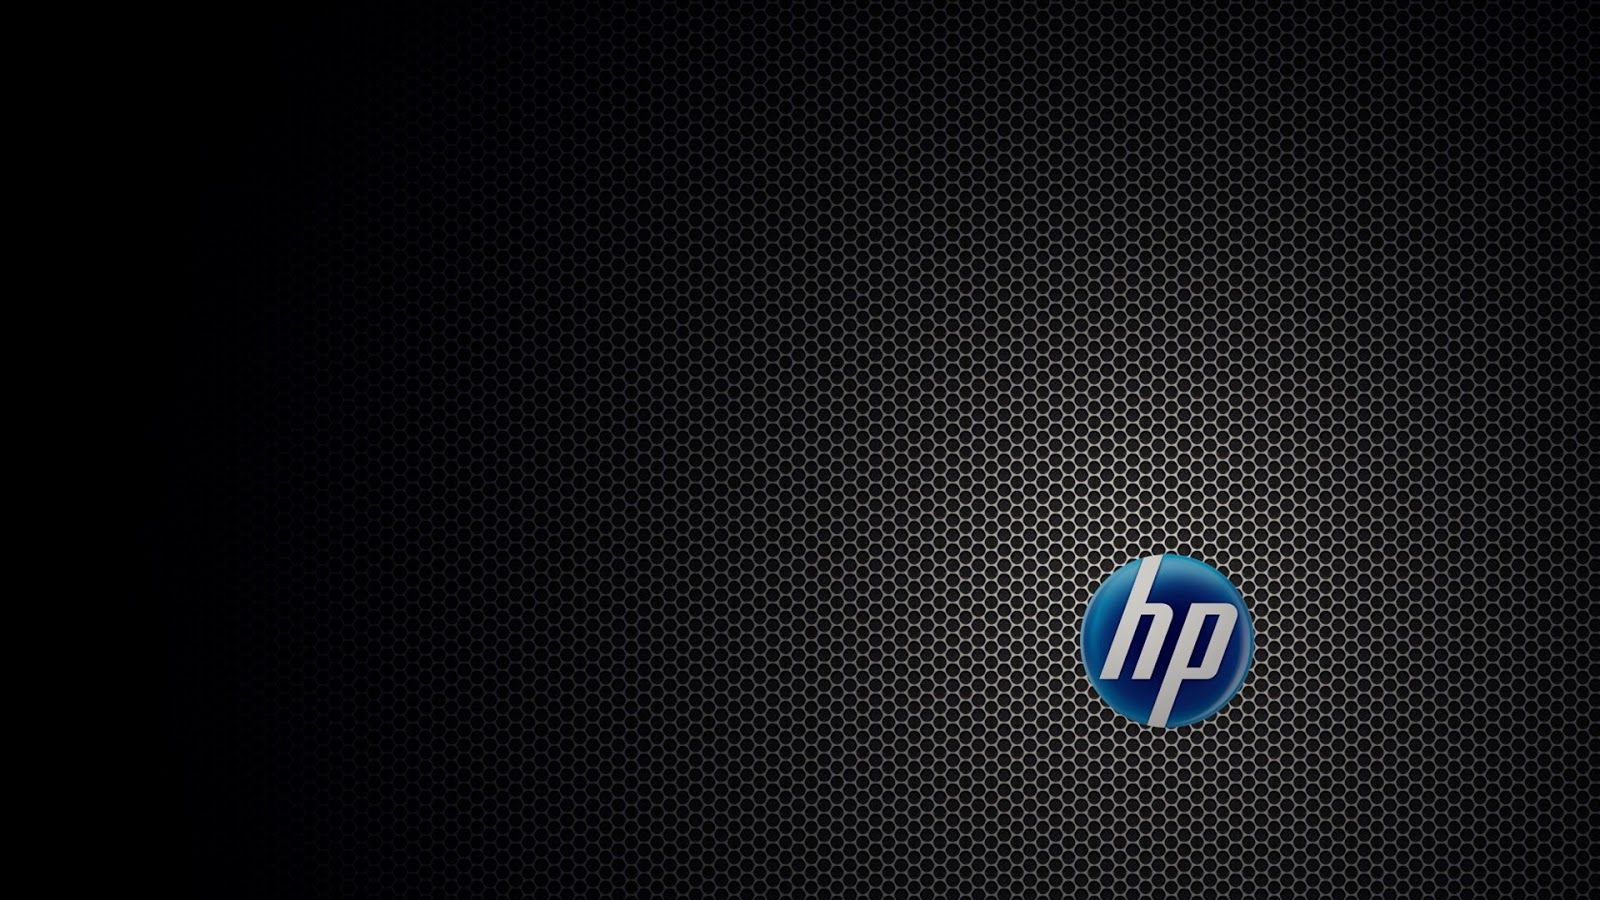 Fondos de pantalla HP - FondosMil